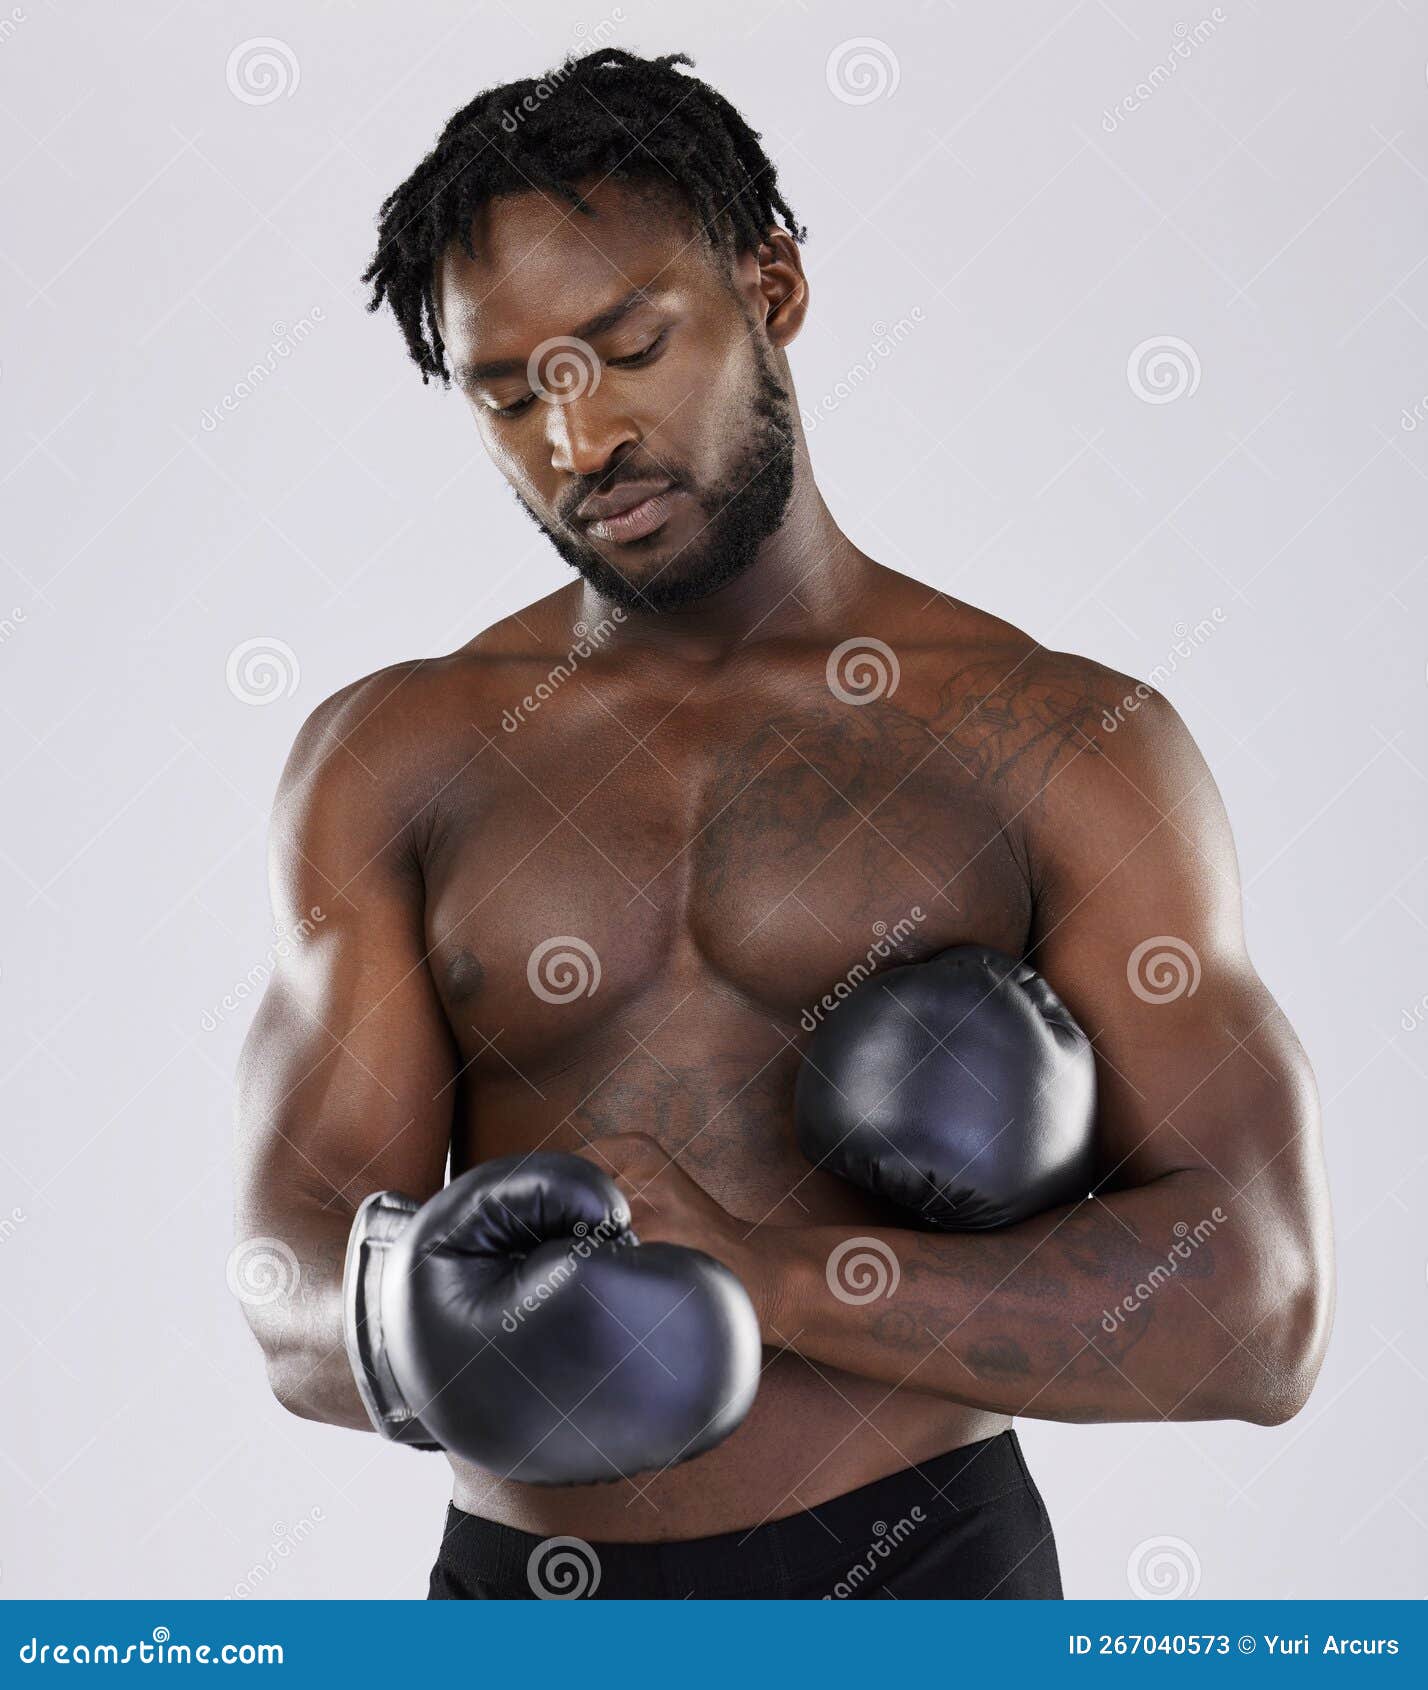 Gants de boxe pour l'entraînement